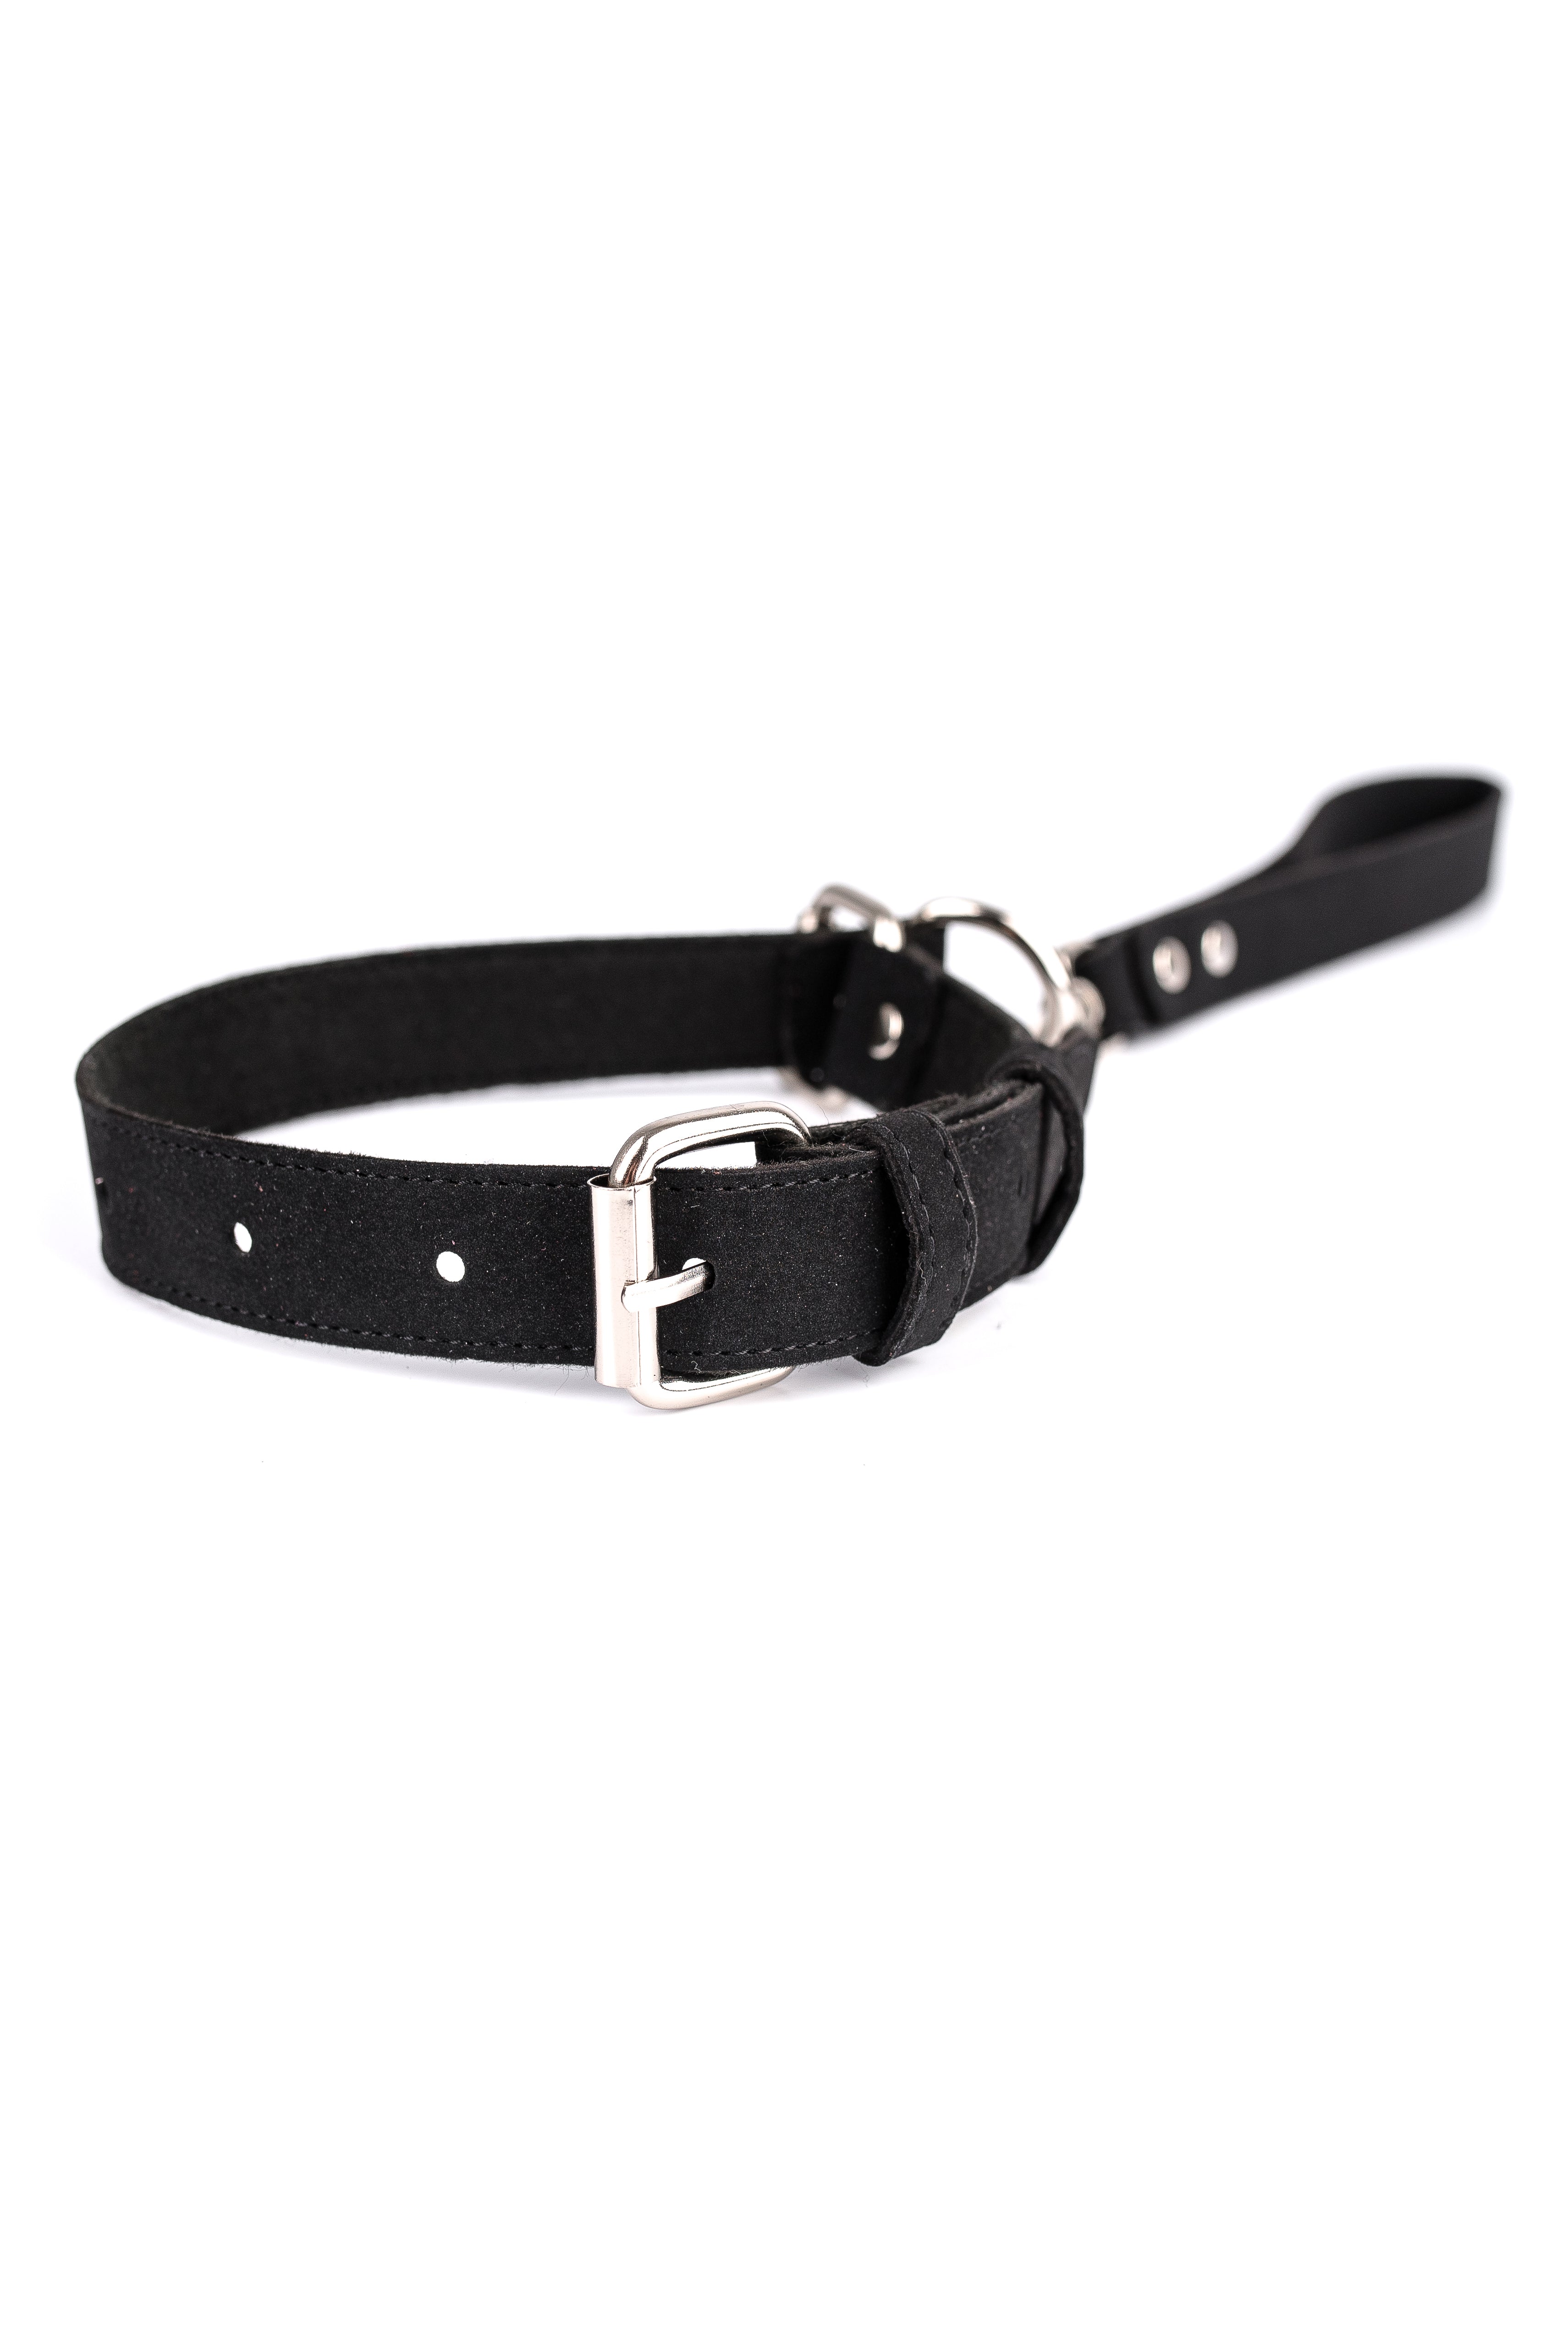 Self-tightening faux leather choke collar